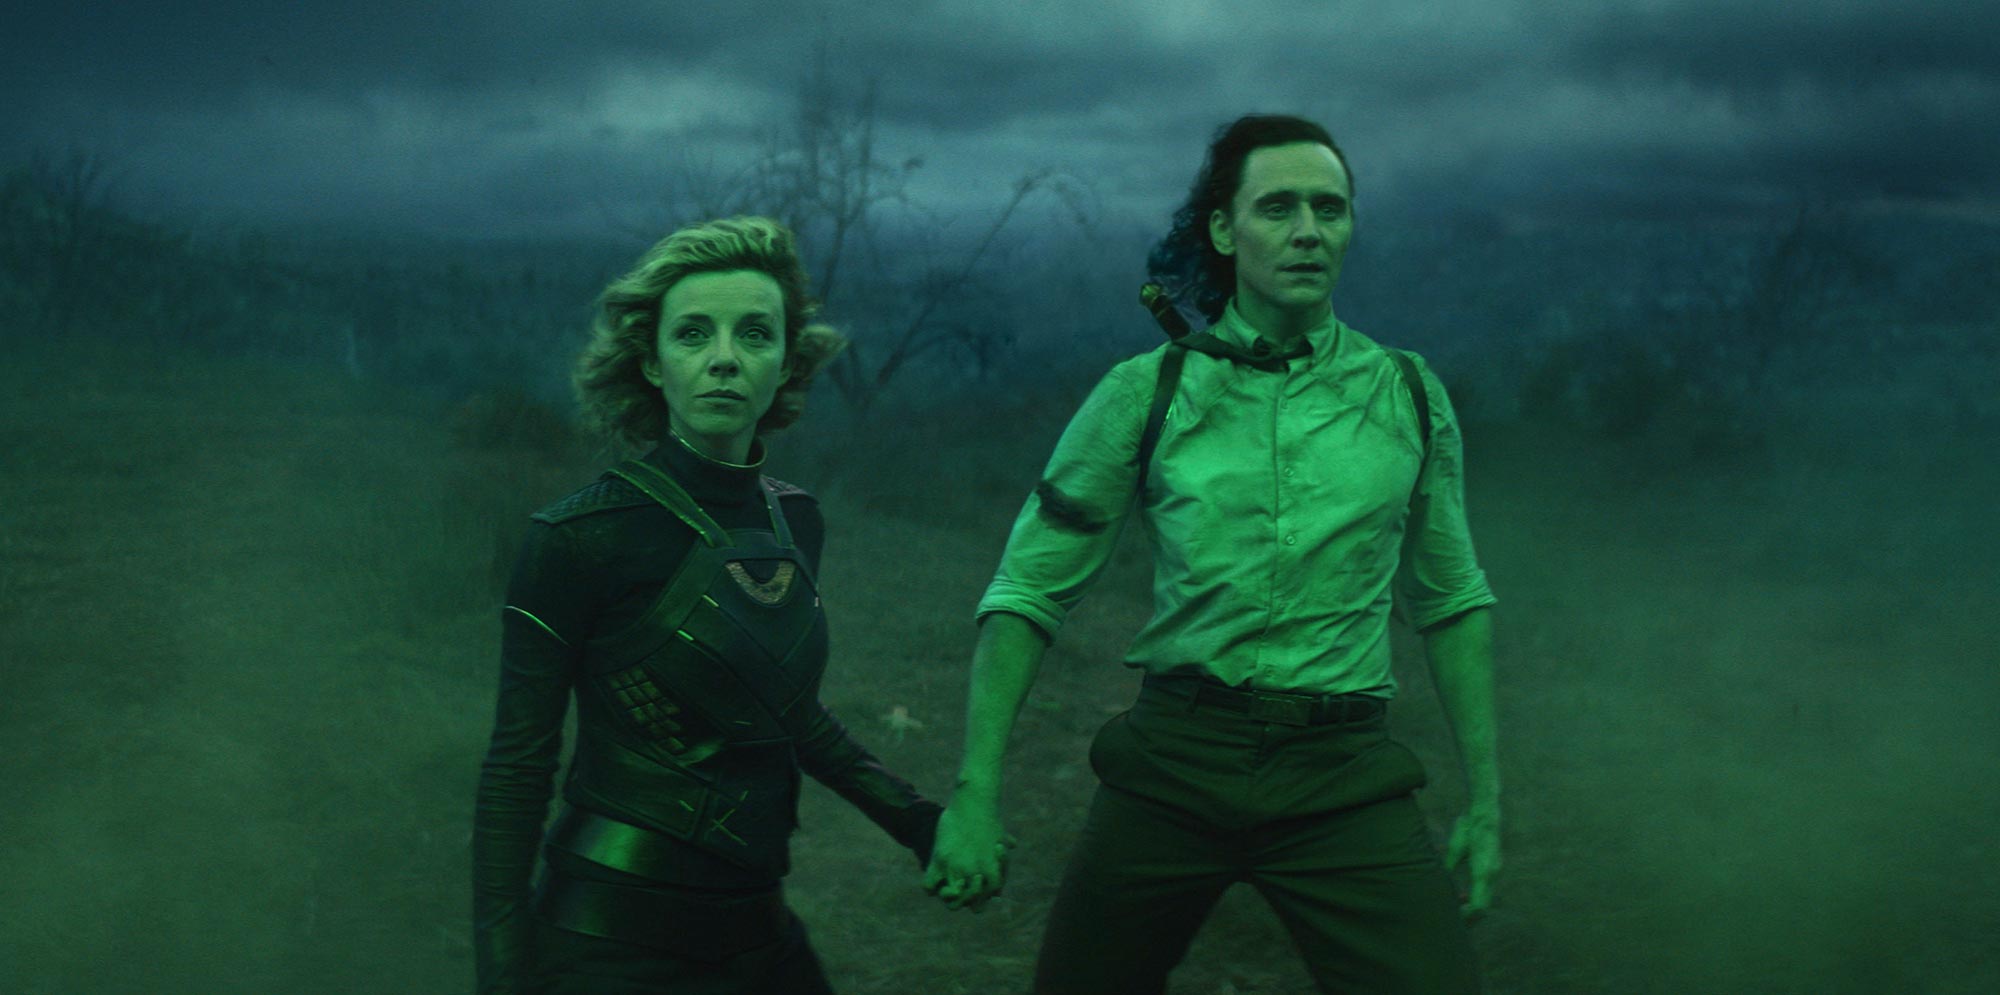 Temporada 2 de Loki e Echo ganham data de lançamento no Disney+